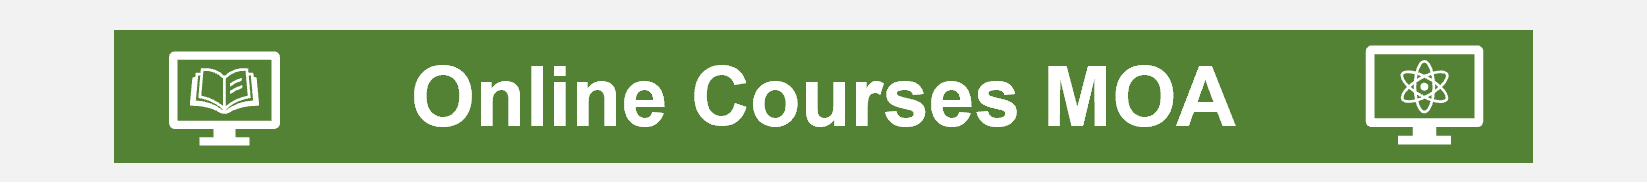 Online Courses MOA